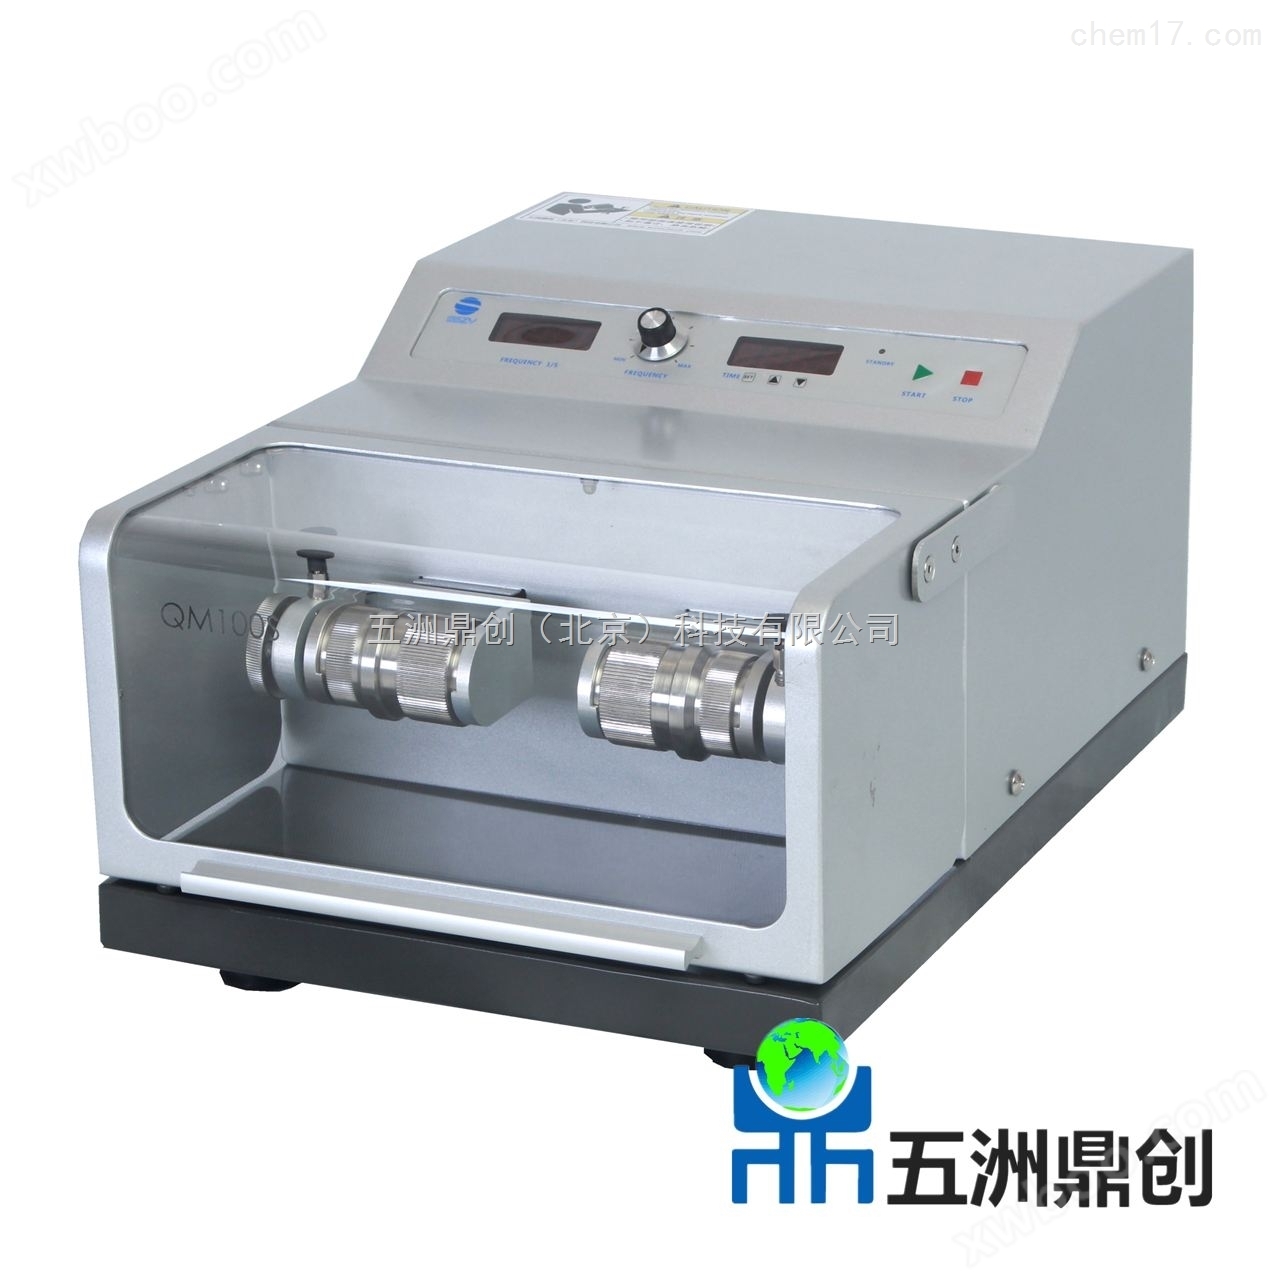 上海 QM100 球磨机系列 高通量组织研磨仪厂方直销冷冻研磨仪